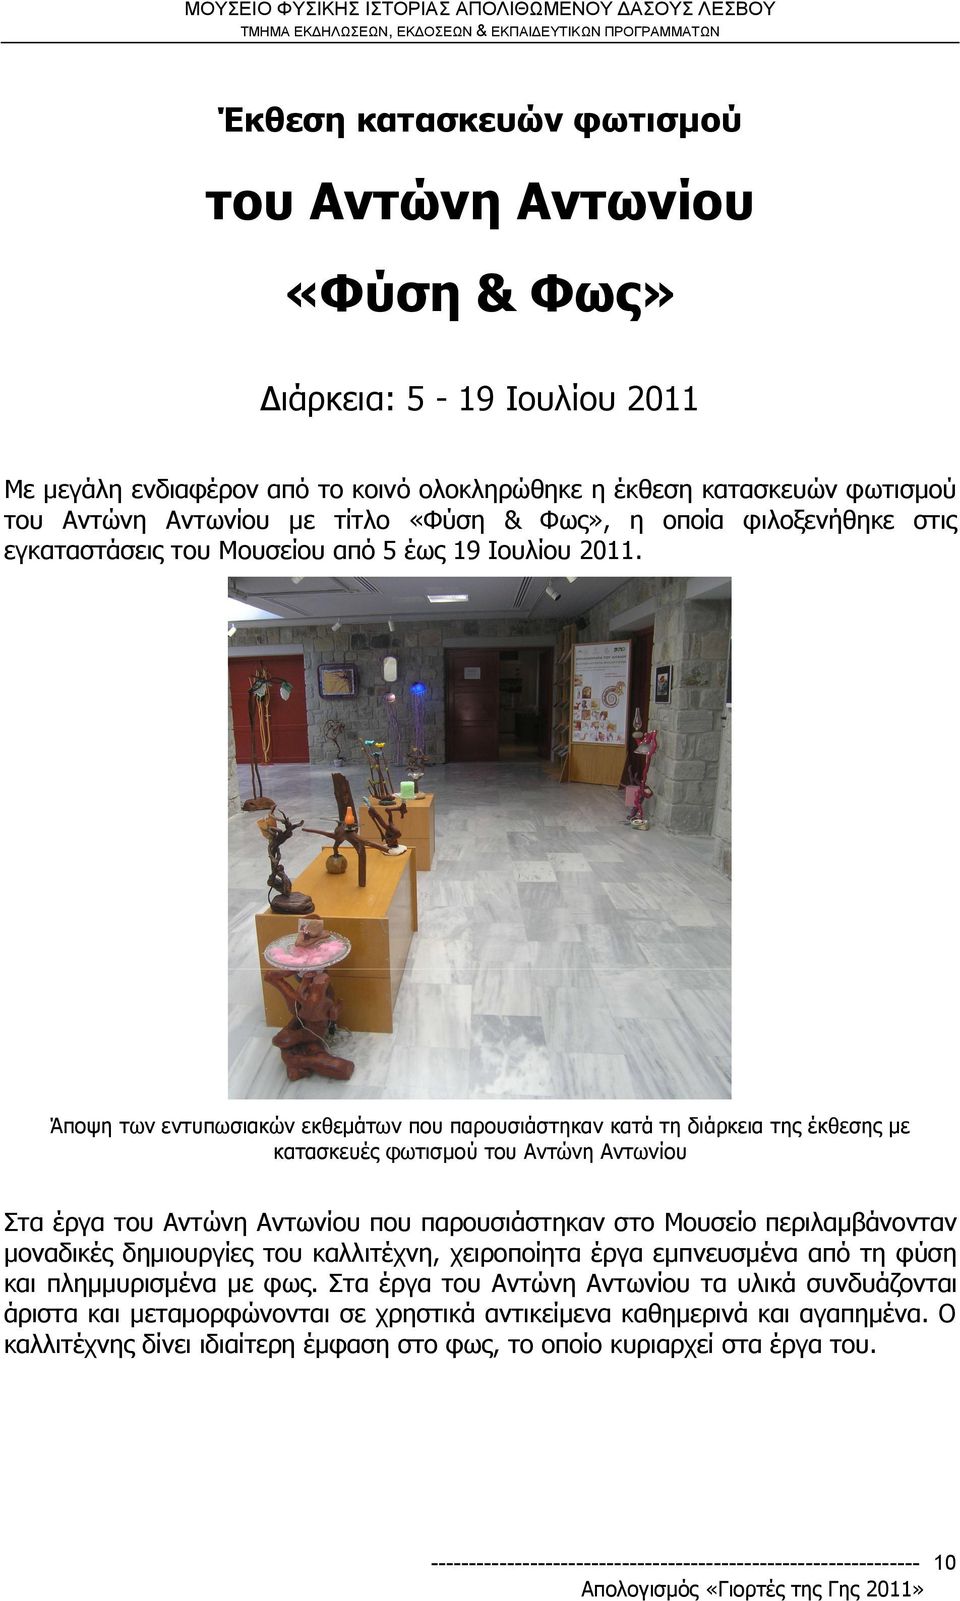 Άποψη των εντυπωσιακών εκθεμάτων που παρουσιάστηκαν κατά τη διάρκεια της έκθεσης με κατασκευές φωτισμού του Αντώνη Αντωνίου Στα έργα του Αντώνη Αντωνίου που παρουσιάστηκαν στο Μουσείο περιλαμβάνονταν